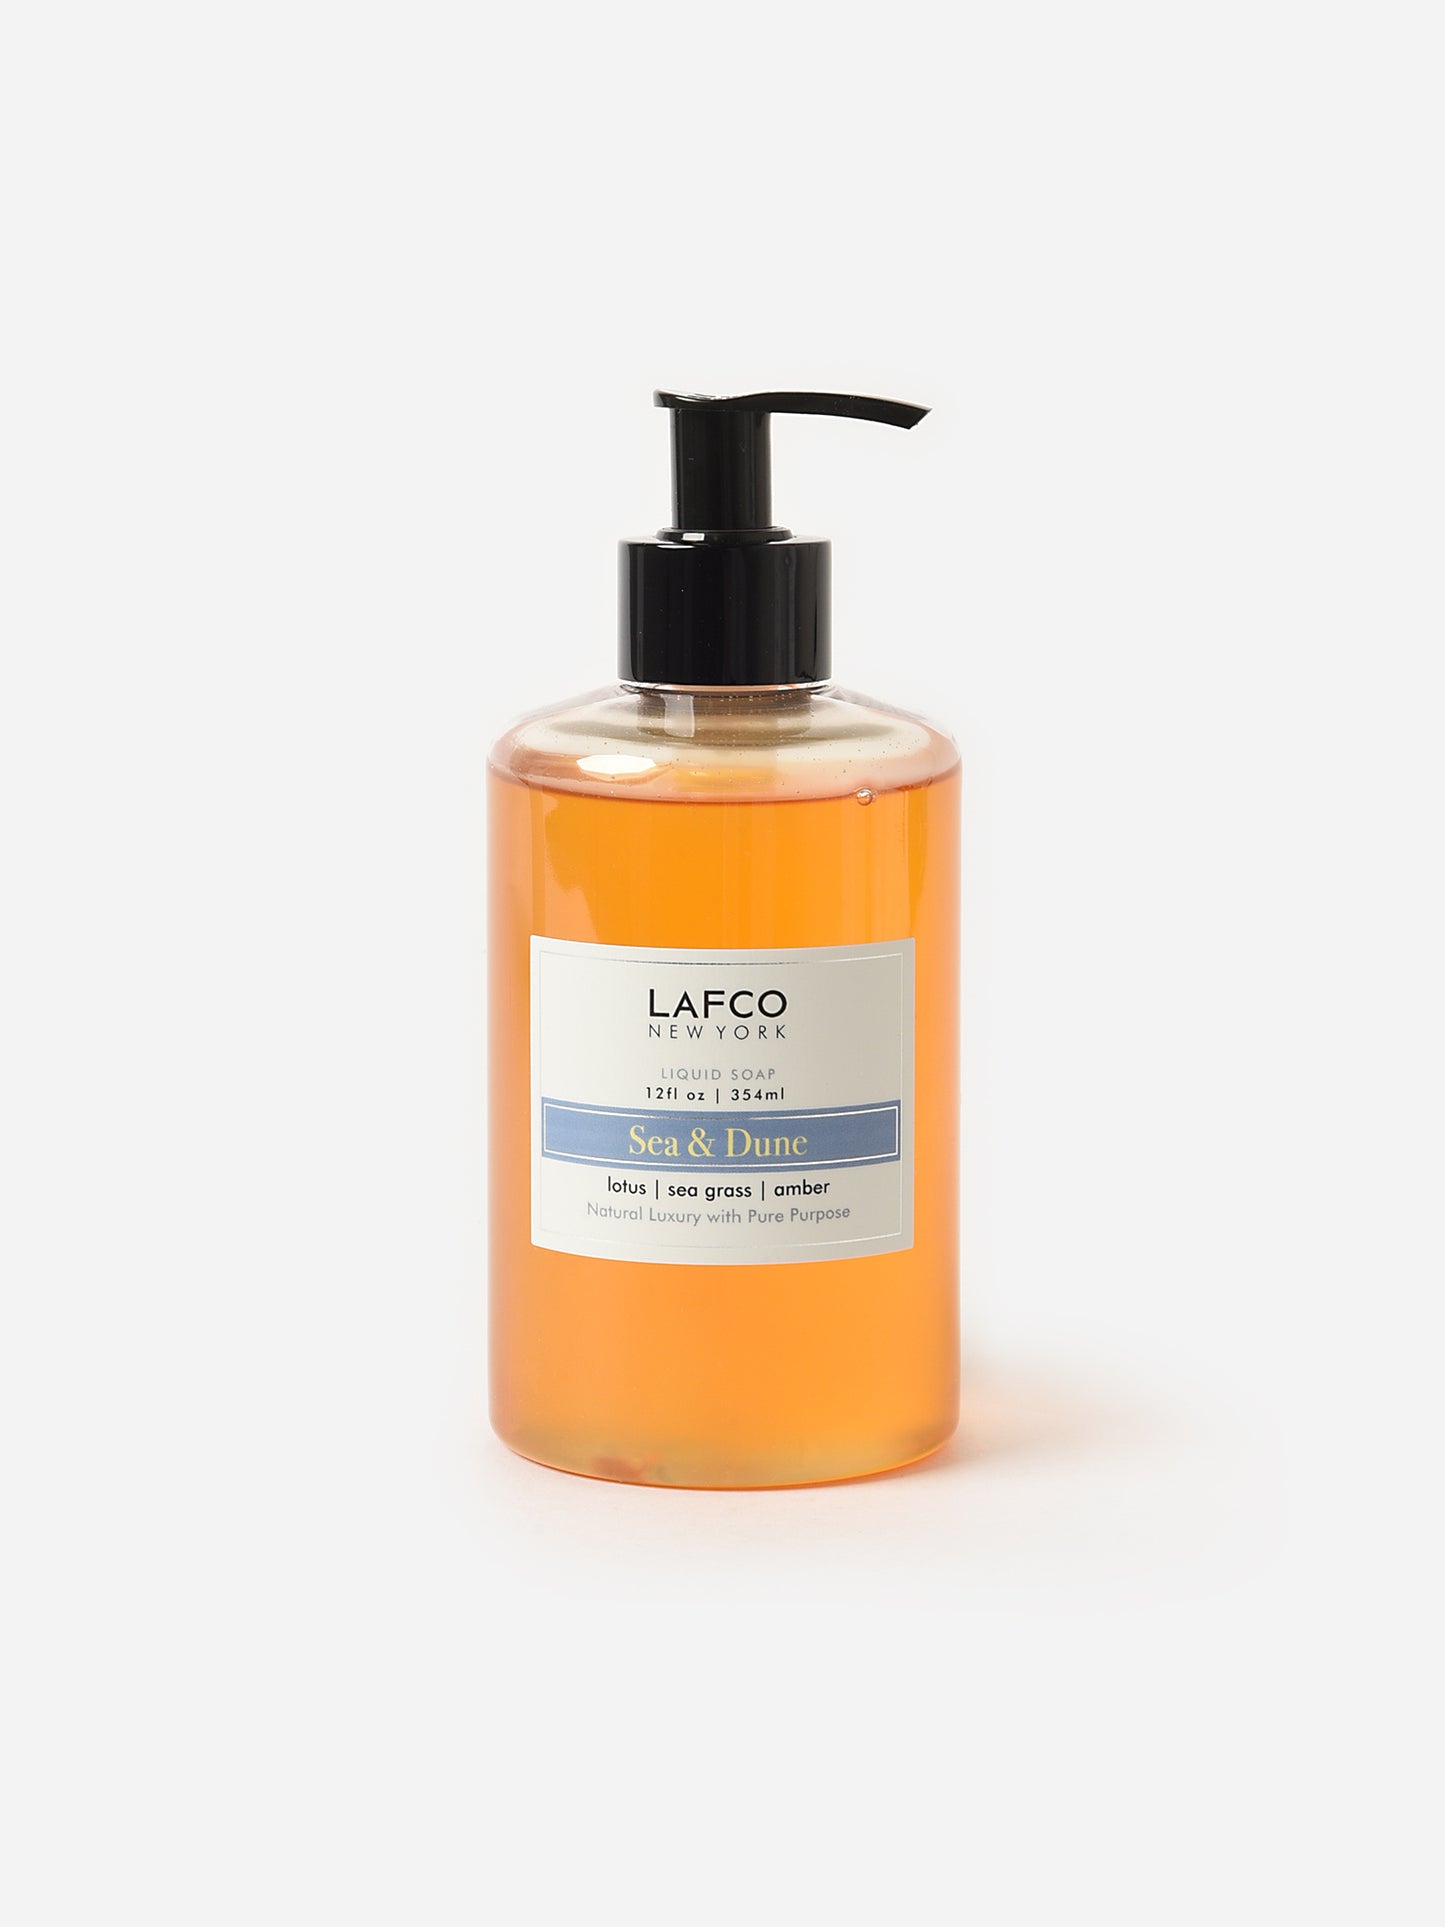 LAFCO Liquid Soap